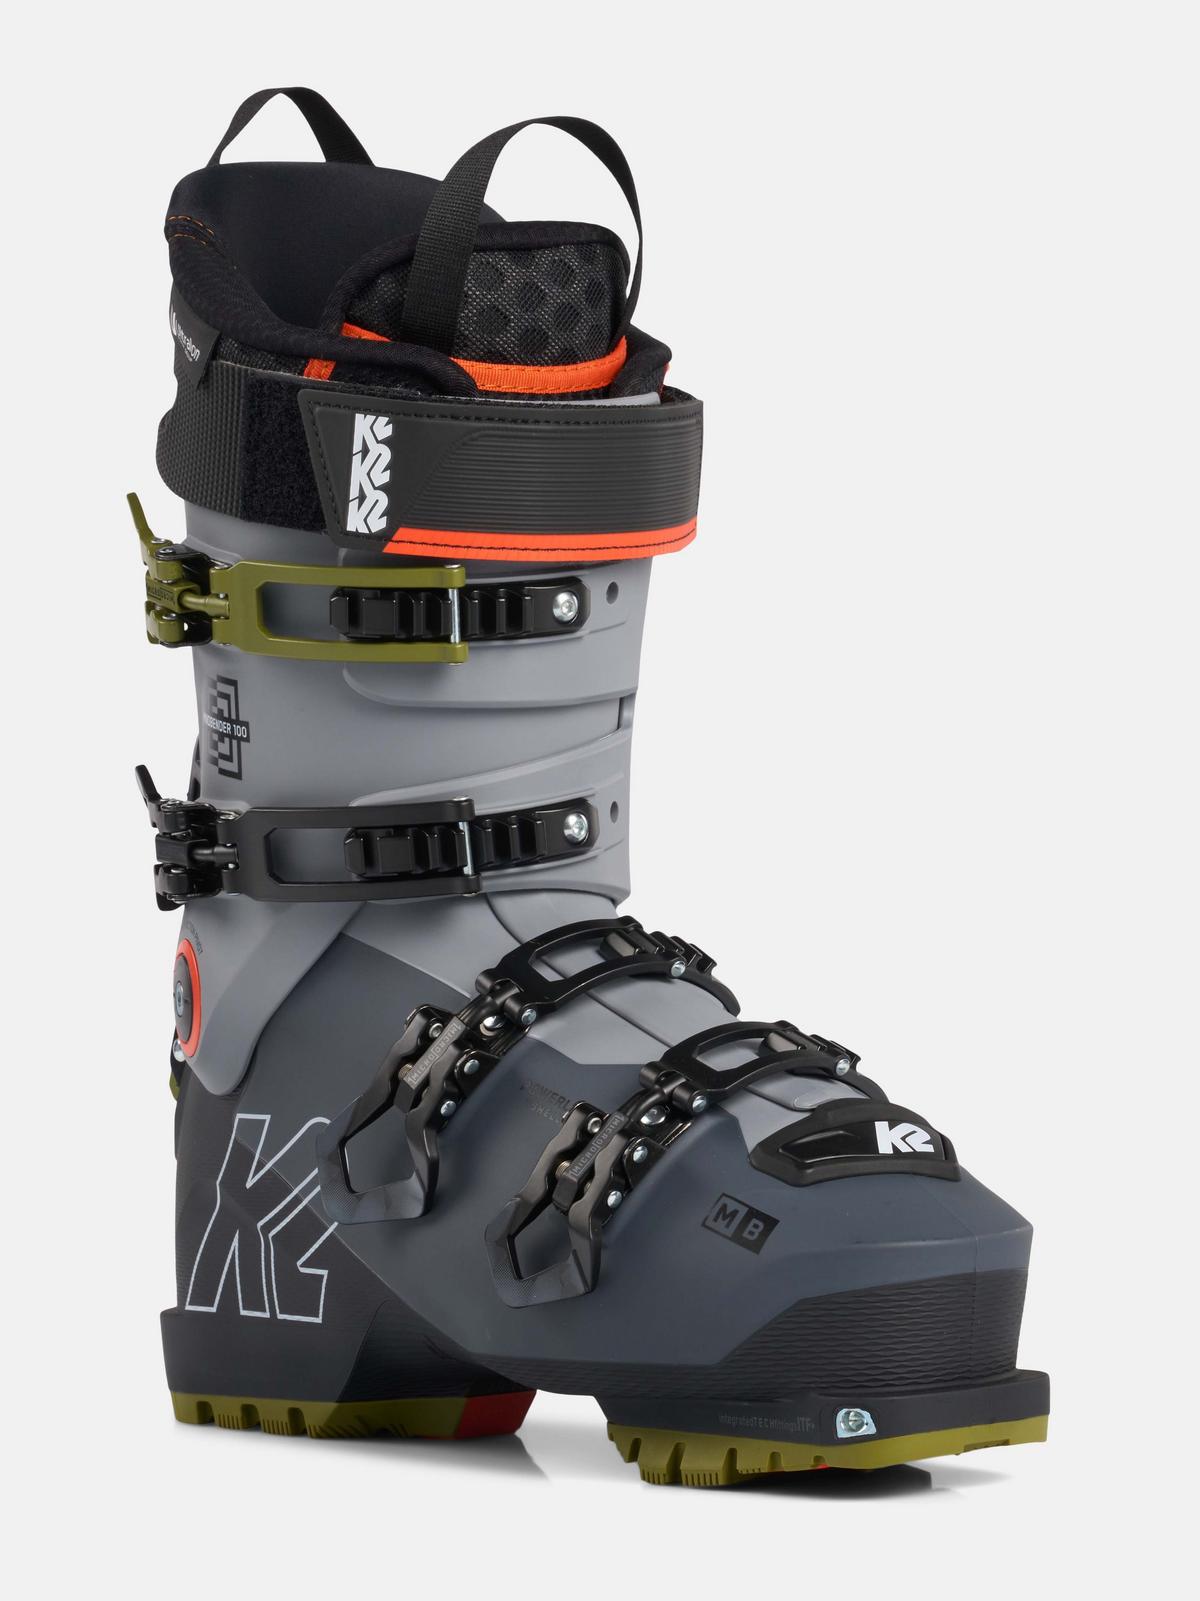 gesponsord koffie boezem Mindbender 100 Ski Boots | K2 Skis and K2 Snowboarding